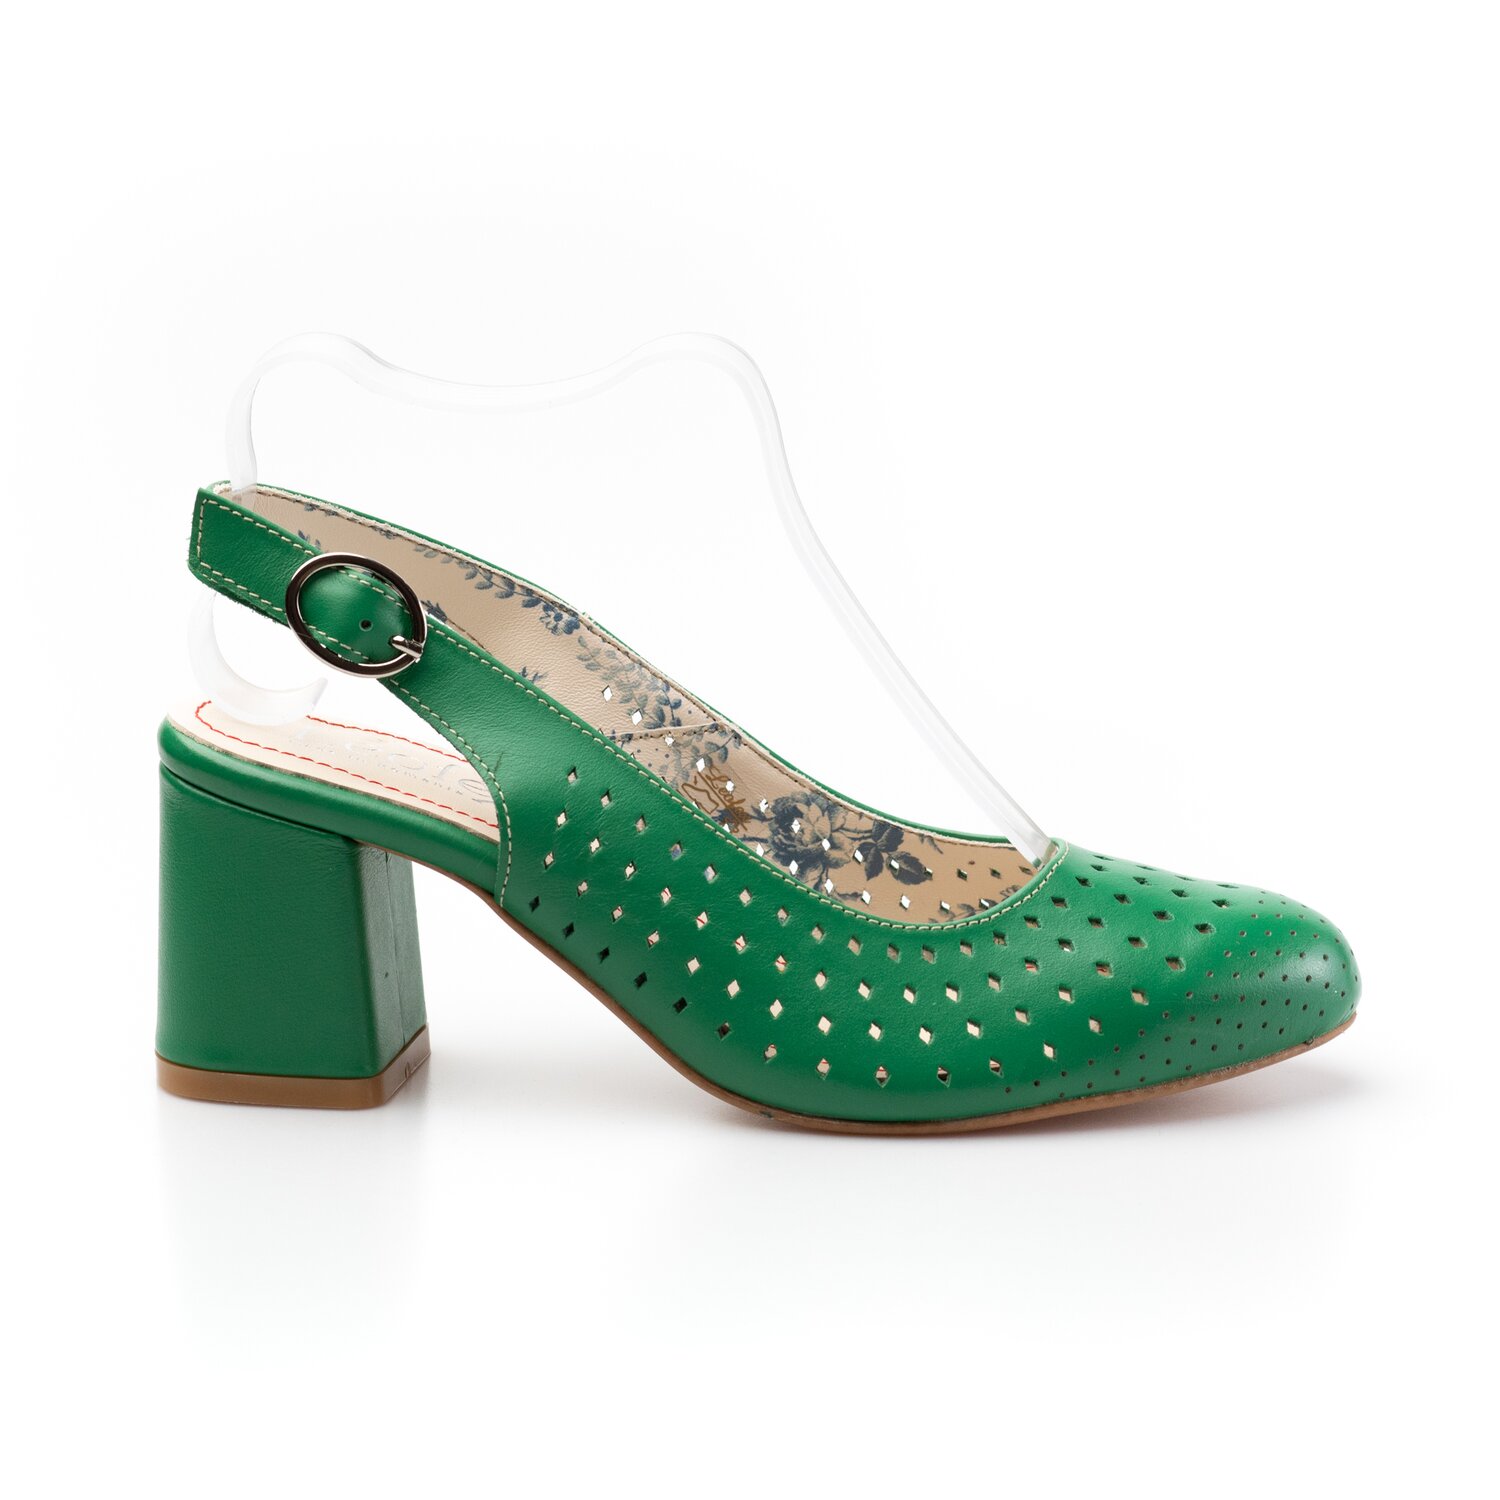 Pantofi casual cu toc damă, perforaţi si decupaţi la spate din piele naturală, Leofex - 247 verde box